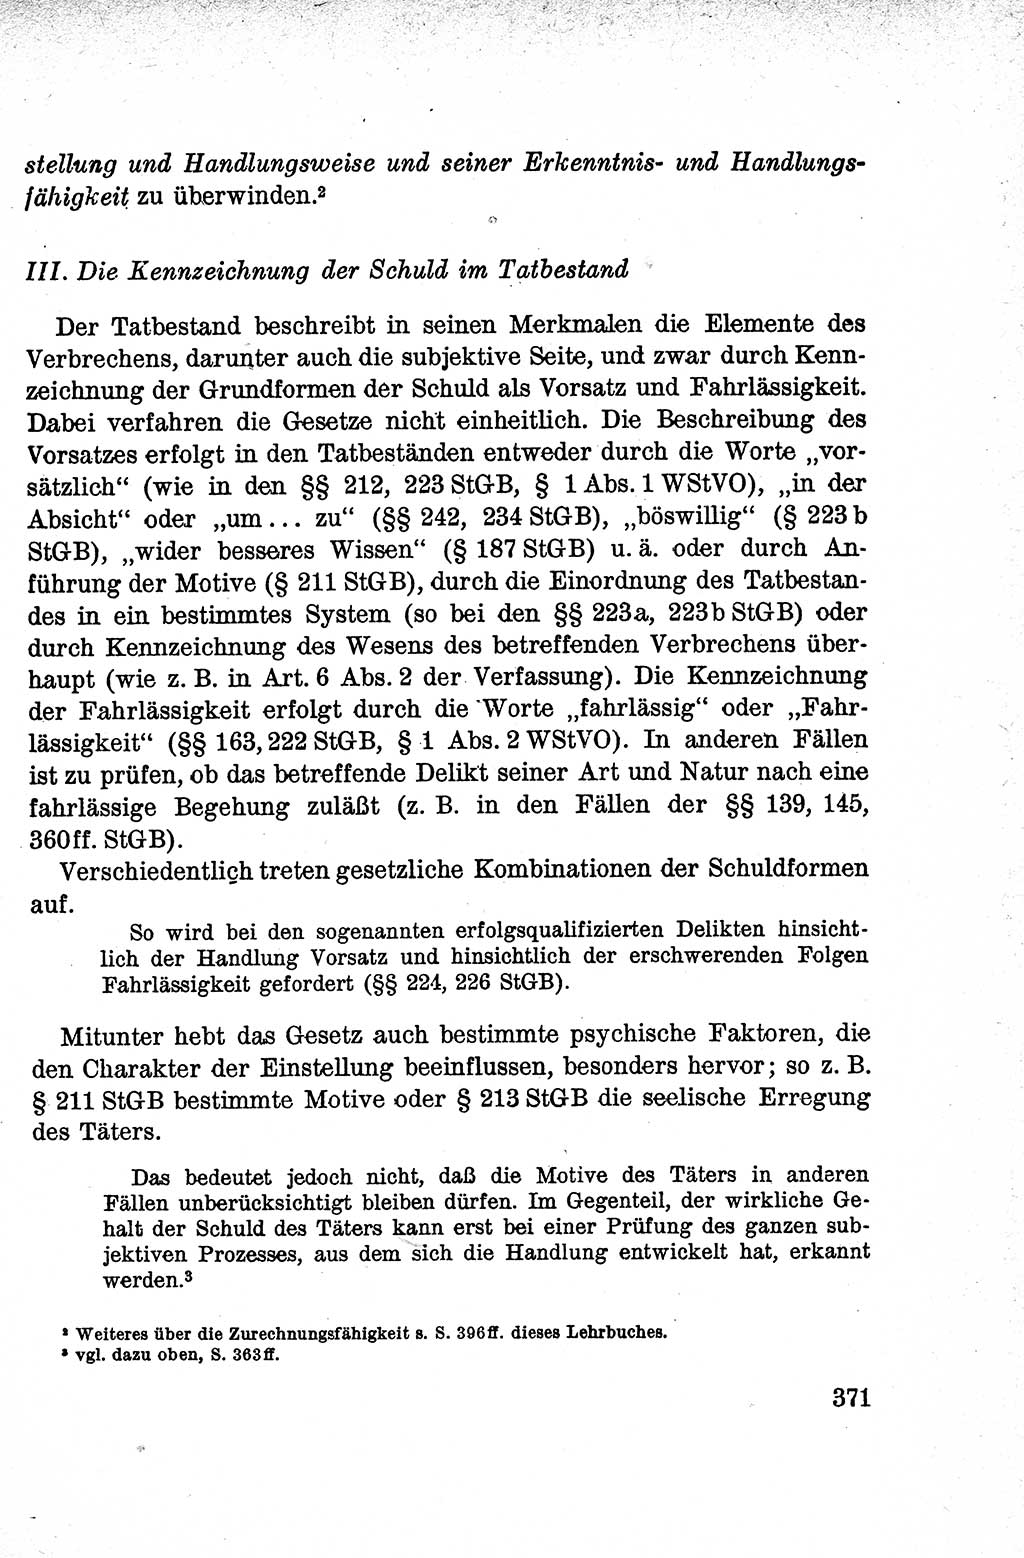 Lehrbuch des Strafrechts der Deutschen Demokratischen Republik (DDR), Allgemeiner Teil 1959, Seite 371 (Lb. Strafr. DDR AT 1959, S. 371)